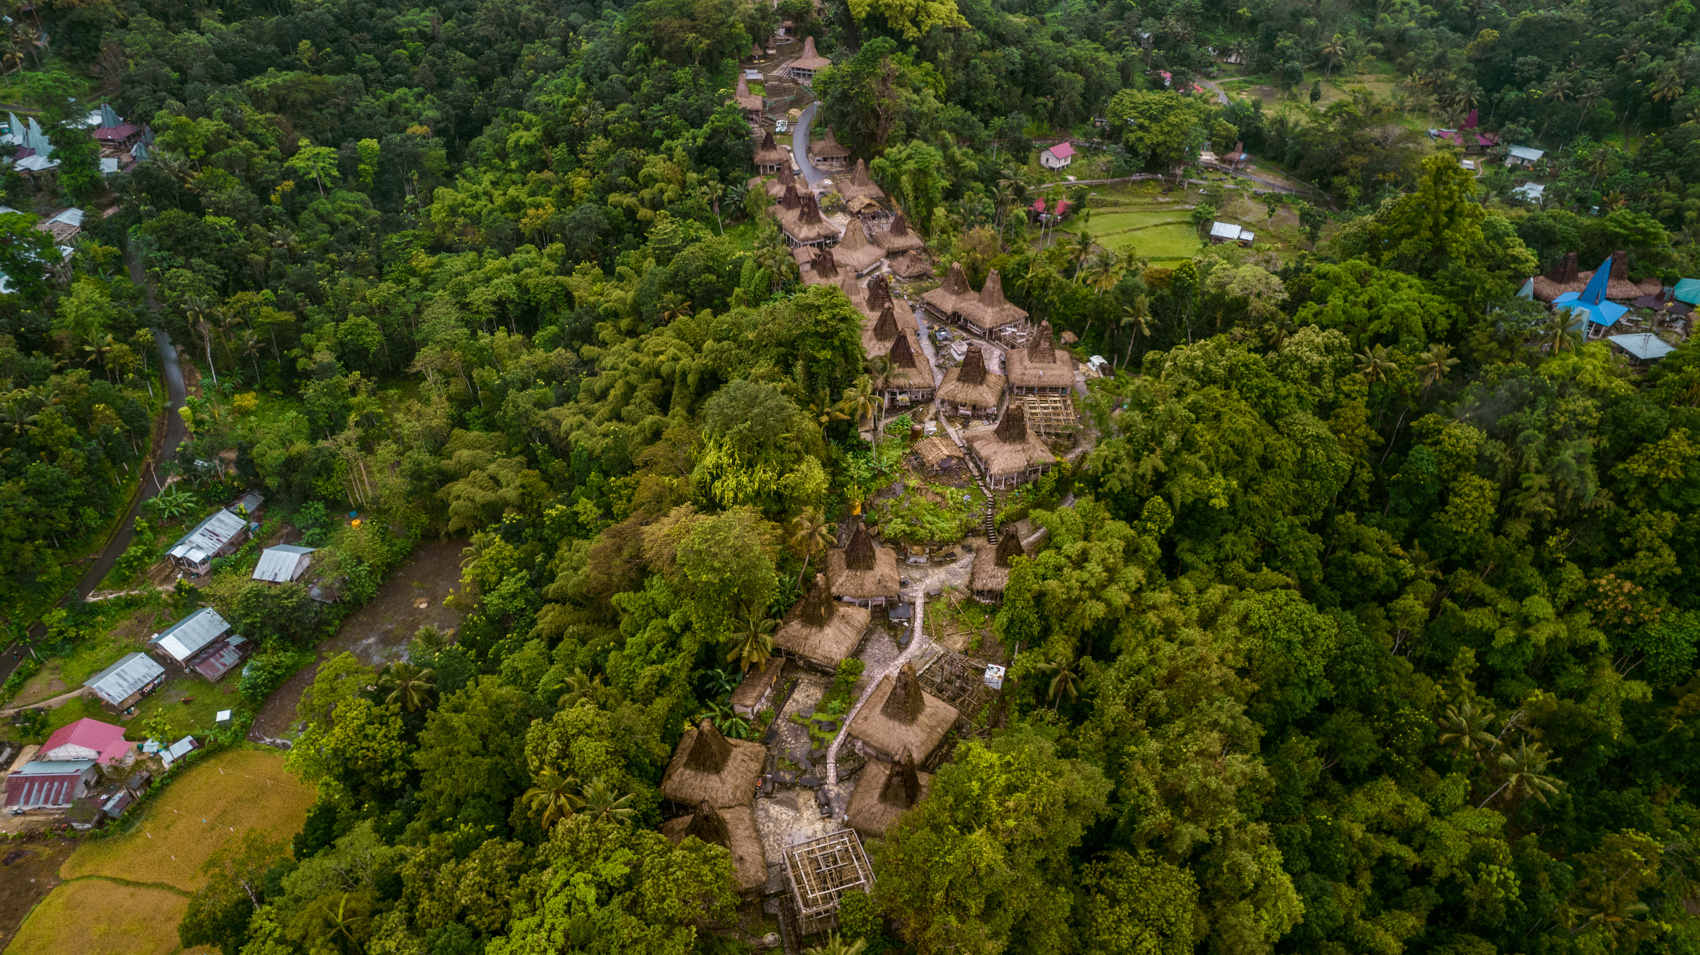 Praijing traditionele dorpen op Sumba Island Indonesië. Bezienswaardigheden en activiteiten. Praktische reisblog, reisgids